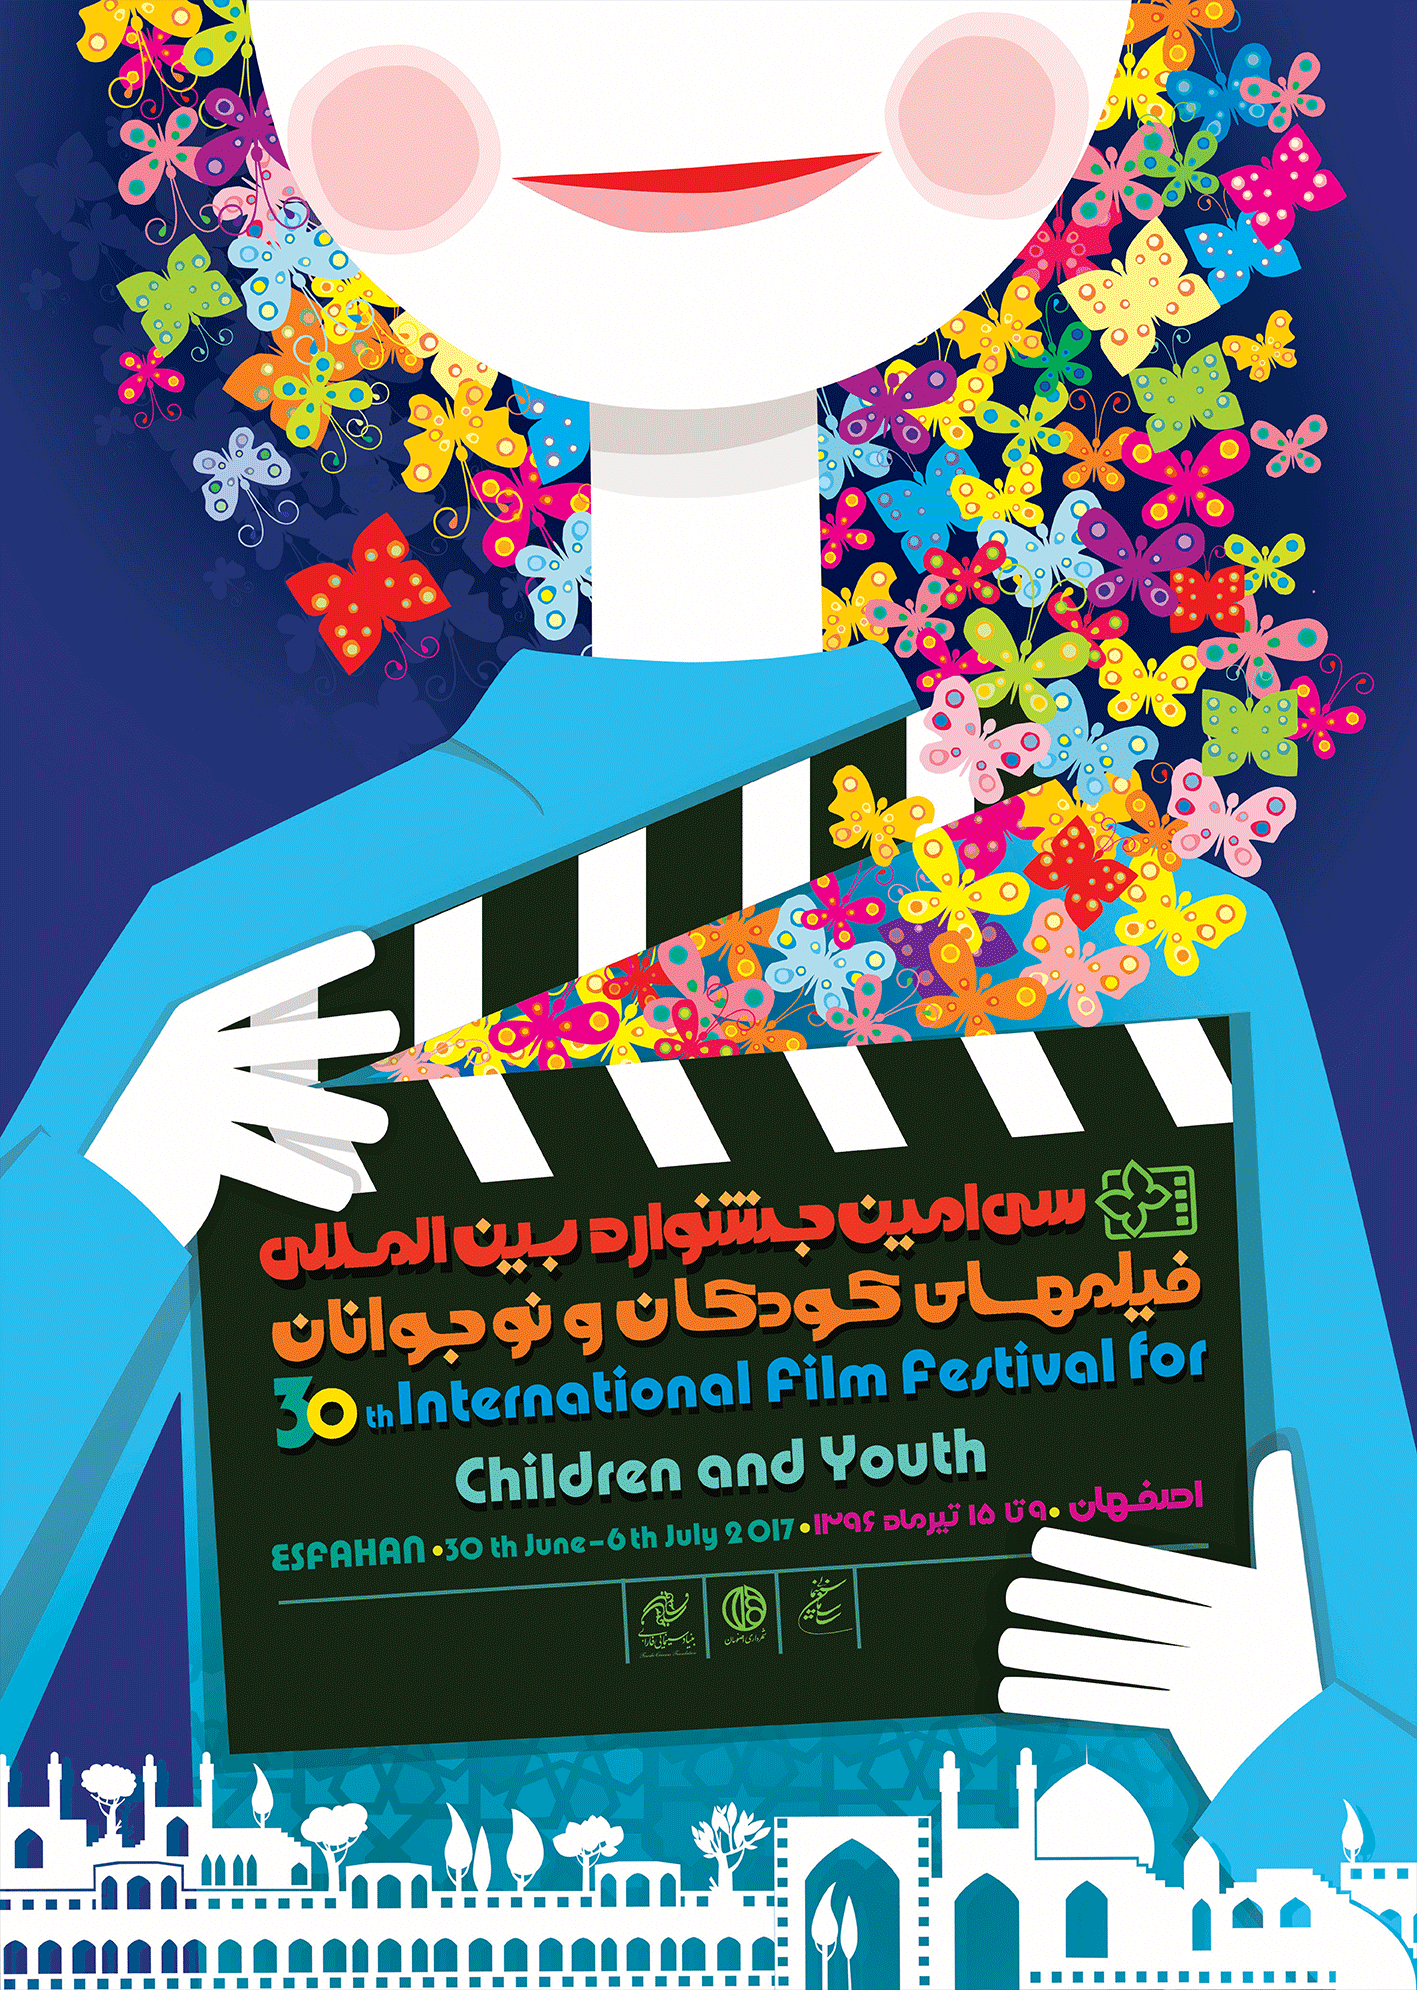 إختتام فعاليات مهرجان اصفهان الدولي لأفلام الأطفال و اليافعين